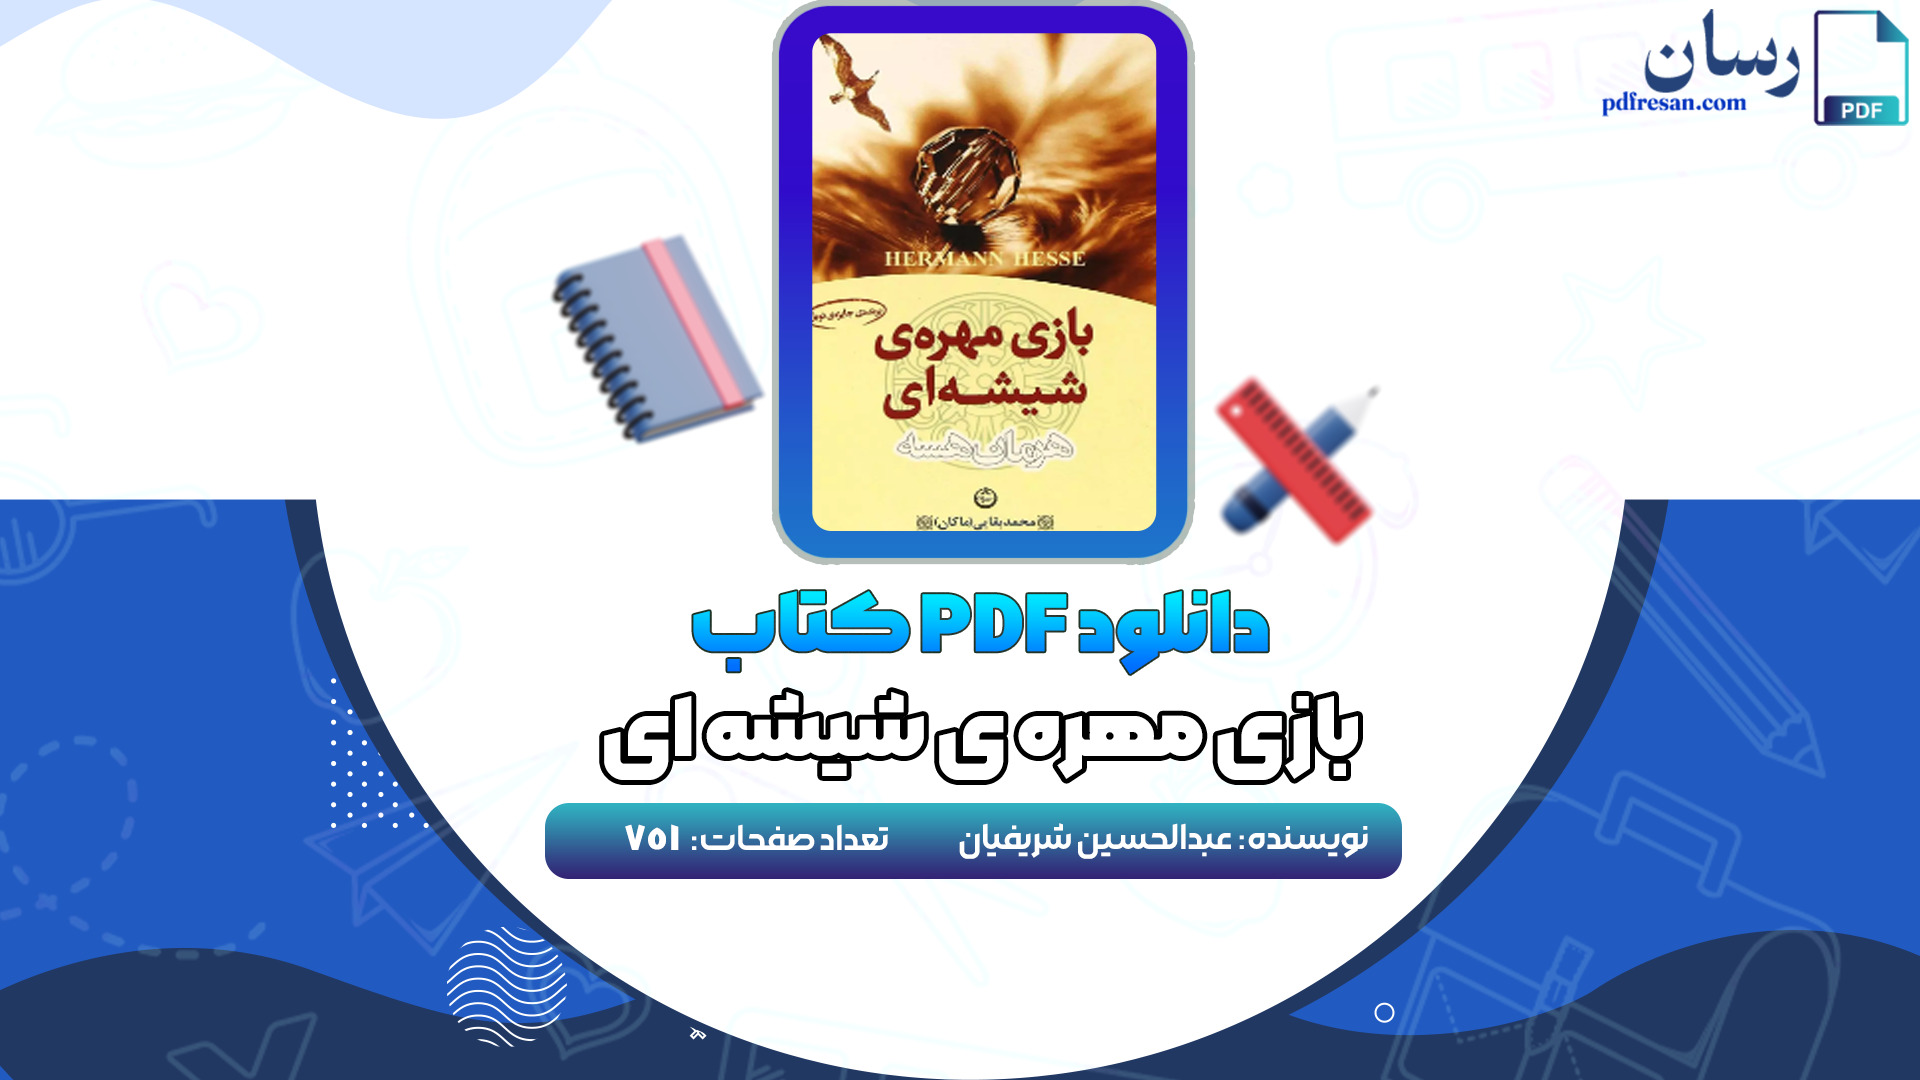 دانلود کتاب بازی مهره ی شیشه ای عبدالحسین شریفیان PDF